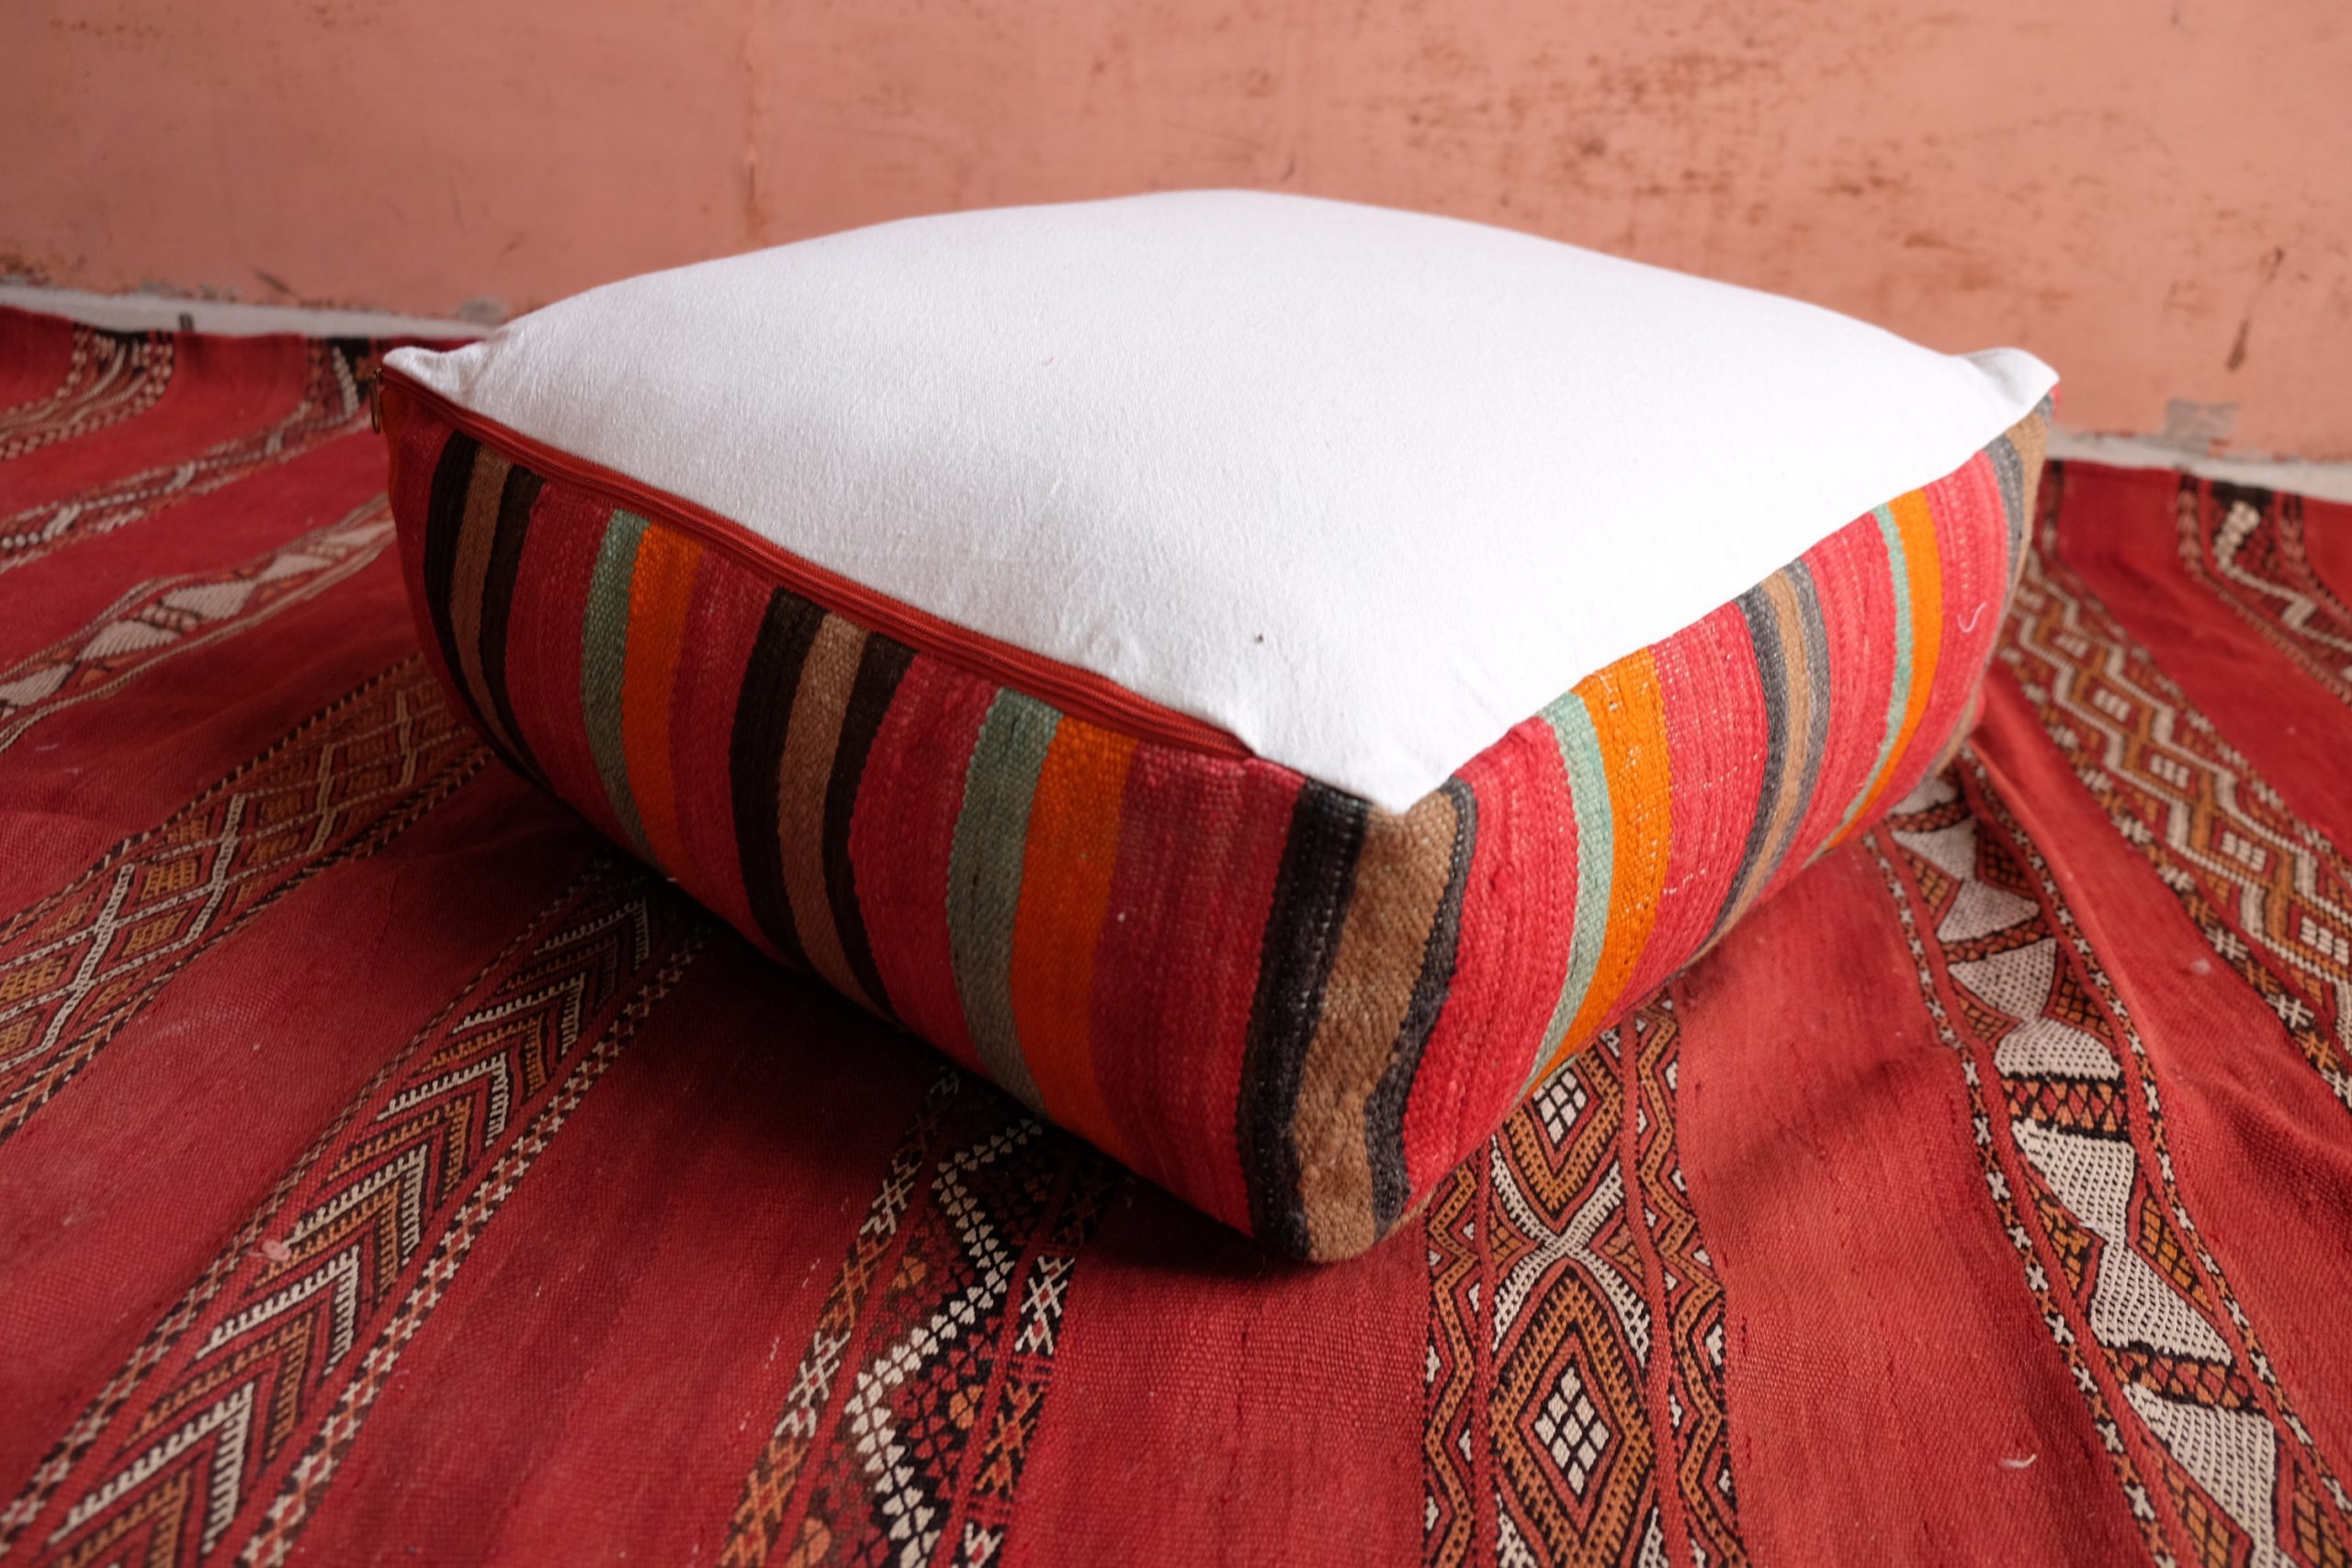 Moroccan pillow - Handmade Square Kilim Pouf 23” x 23” x 8"